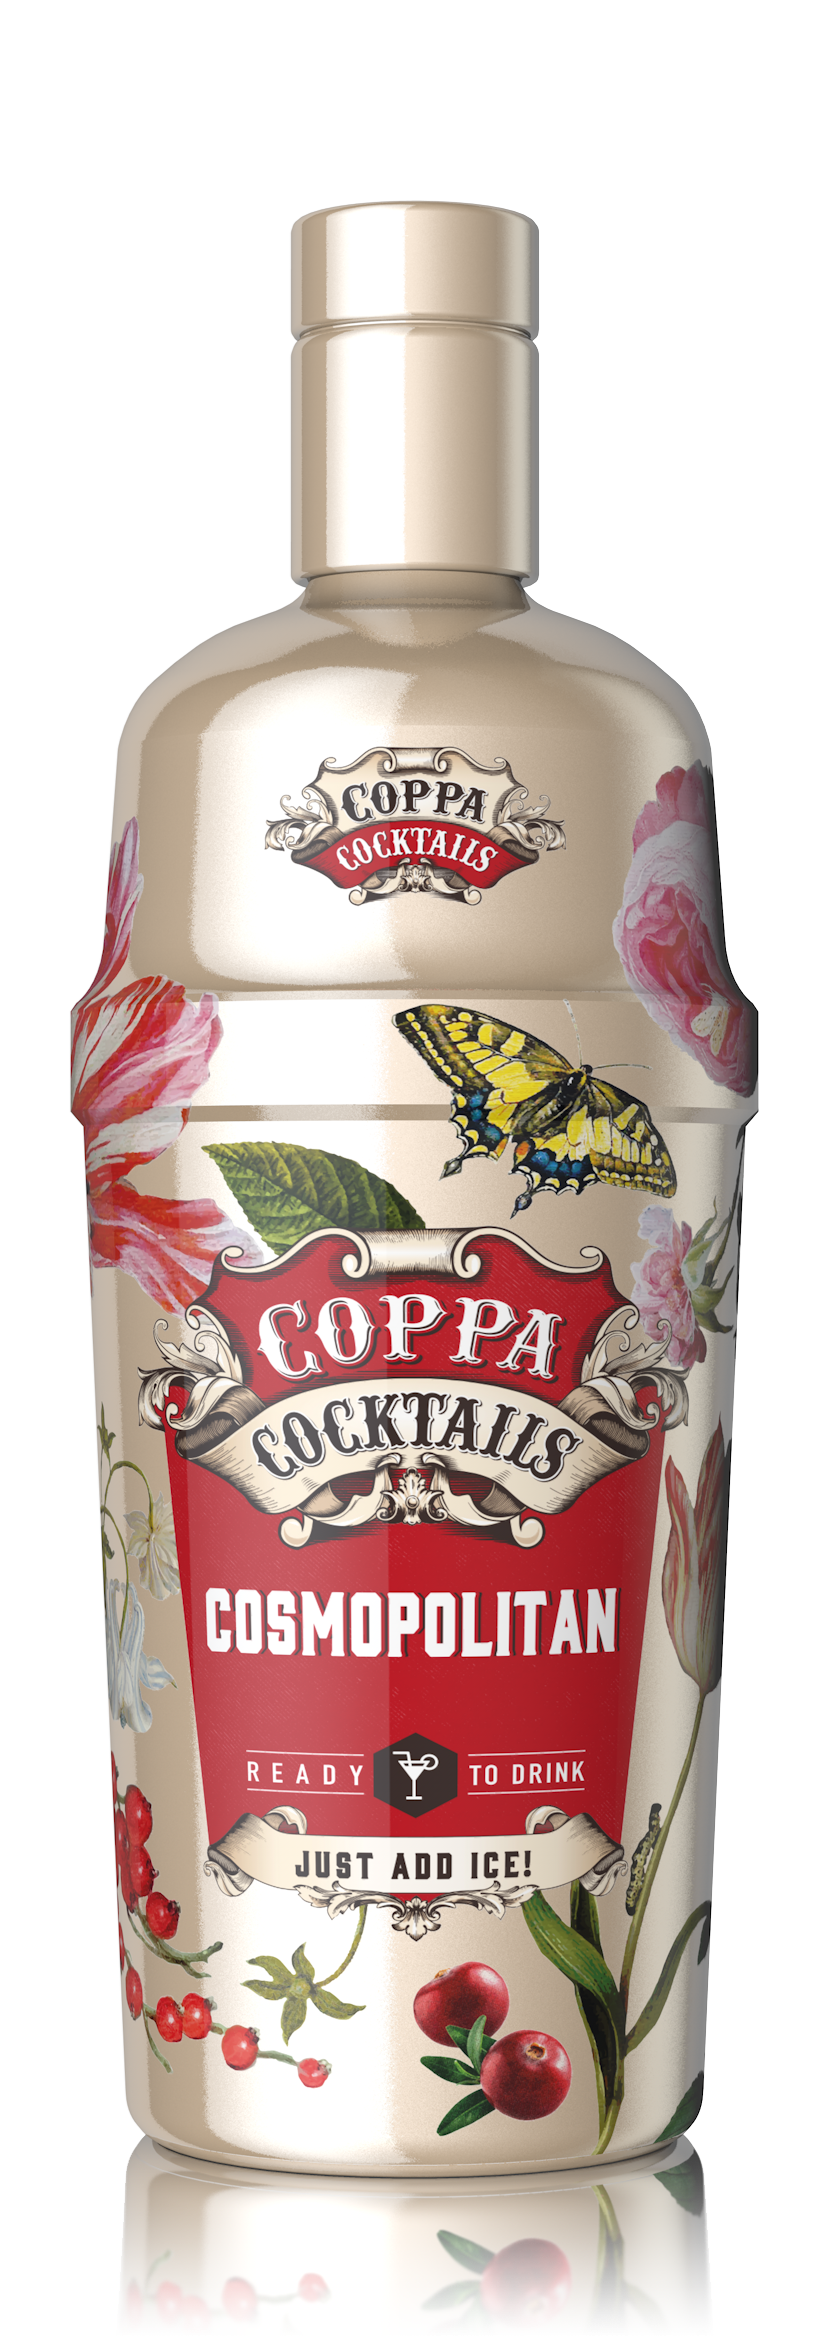 Coppa Cocktails Cosmopolitan 70cl 10%